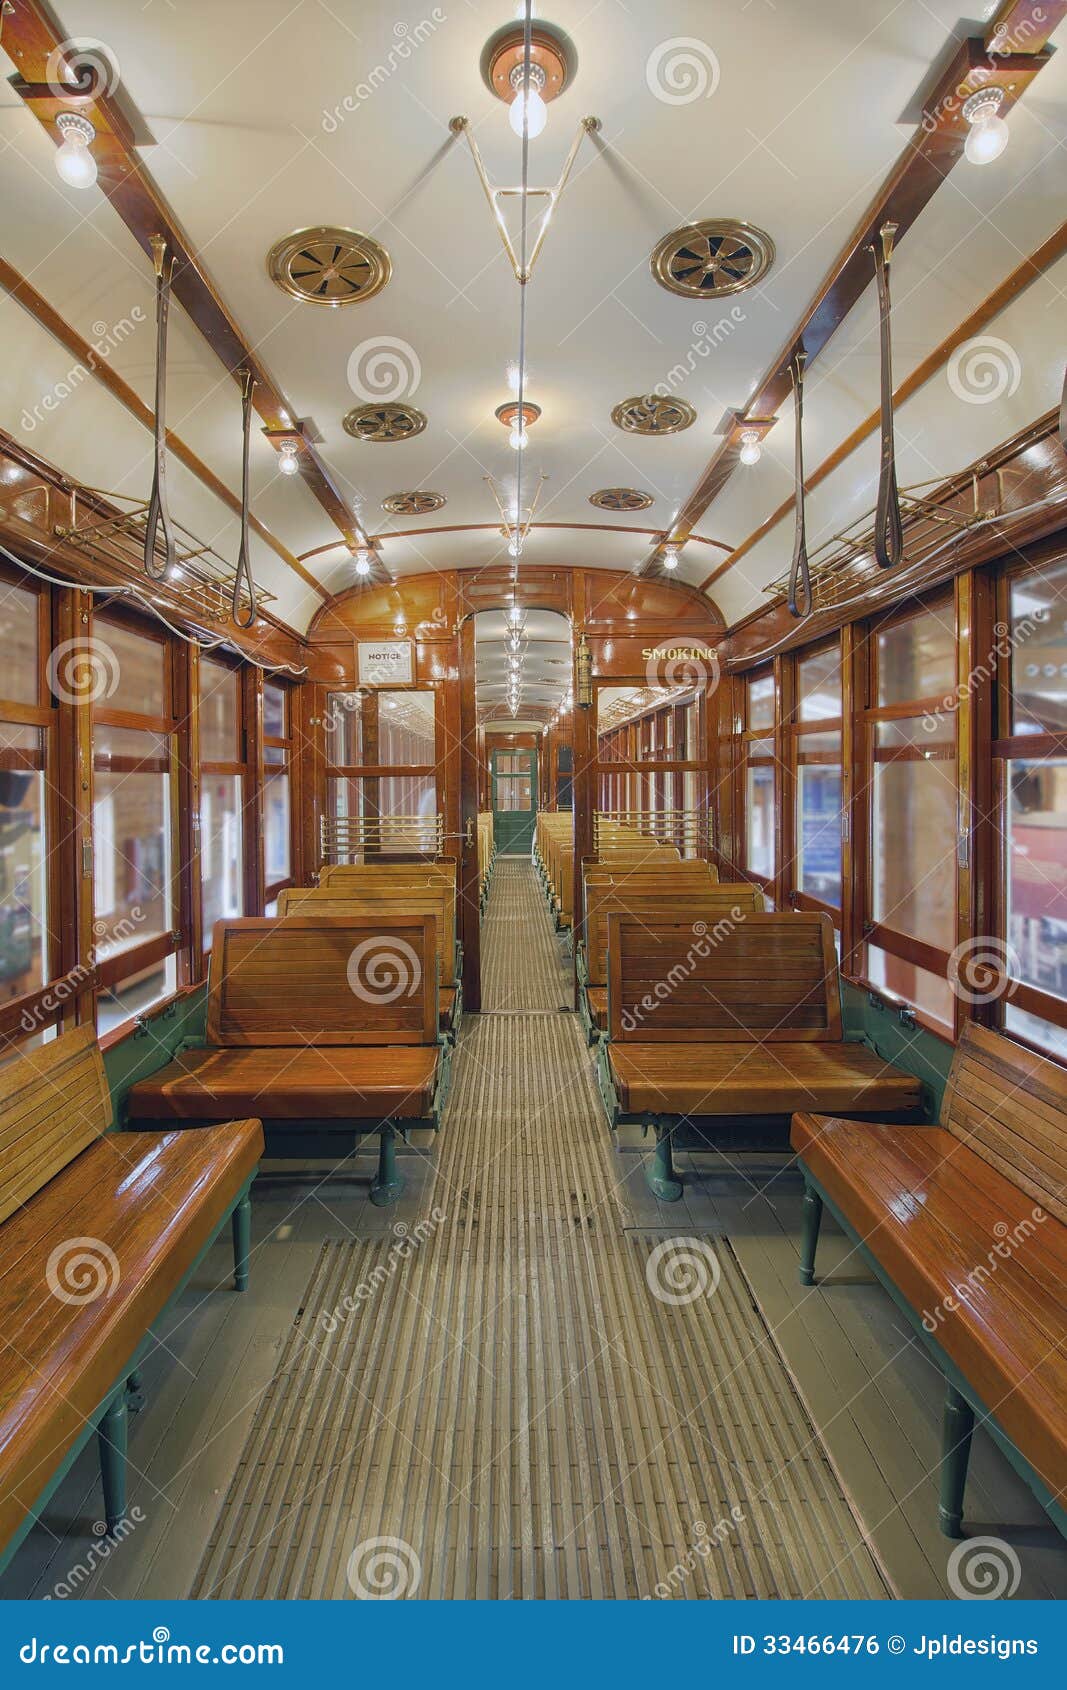 old historic restored tram interior